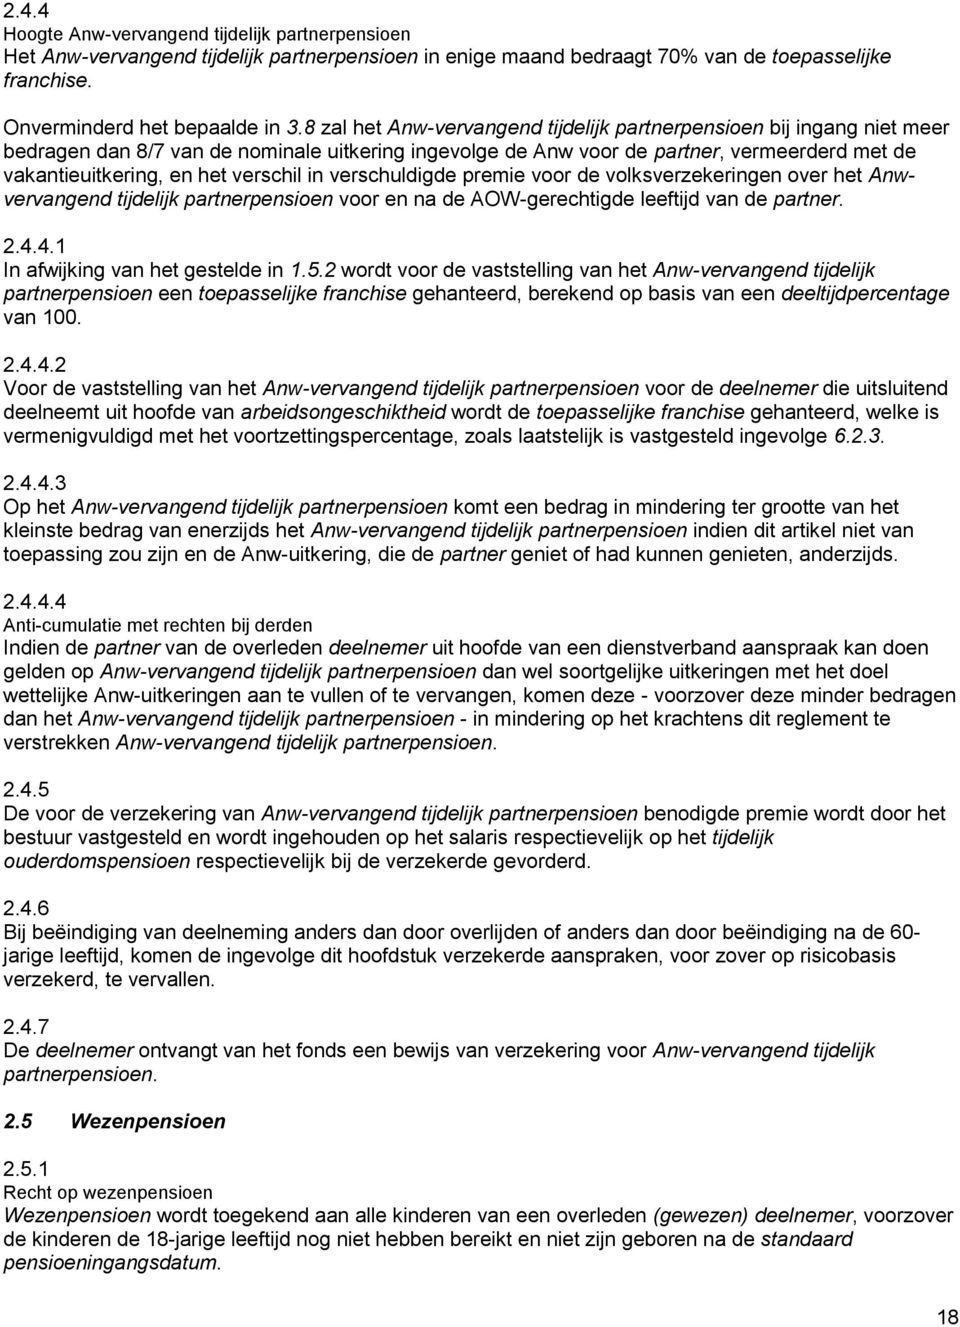 verschil in verschuldigde premie voor de volksverzekeringen over het Anwvervangend tijdelijk partnerpensioen voor en na de AOW-gerechtigde leeftijd van de partner. 2.4.